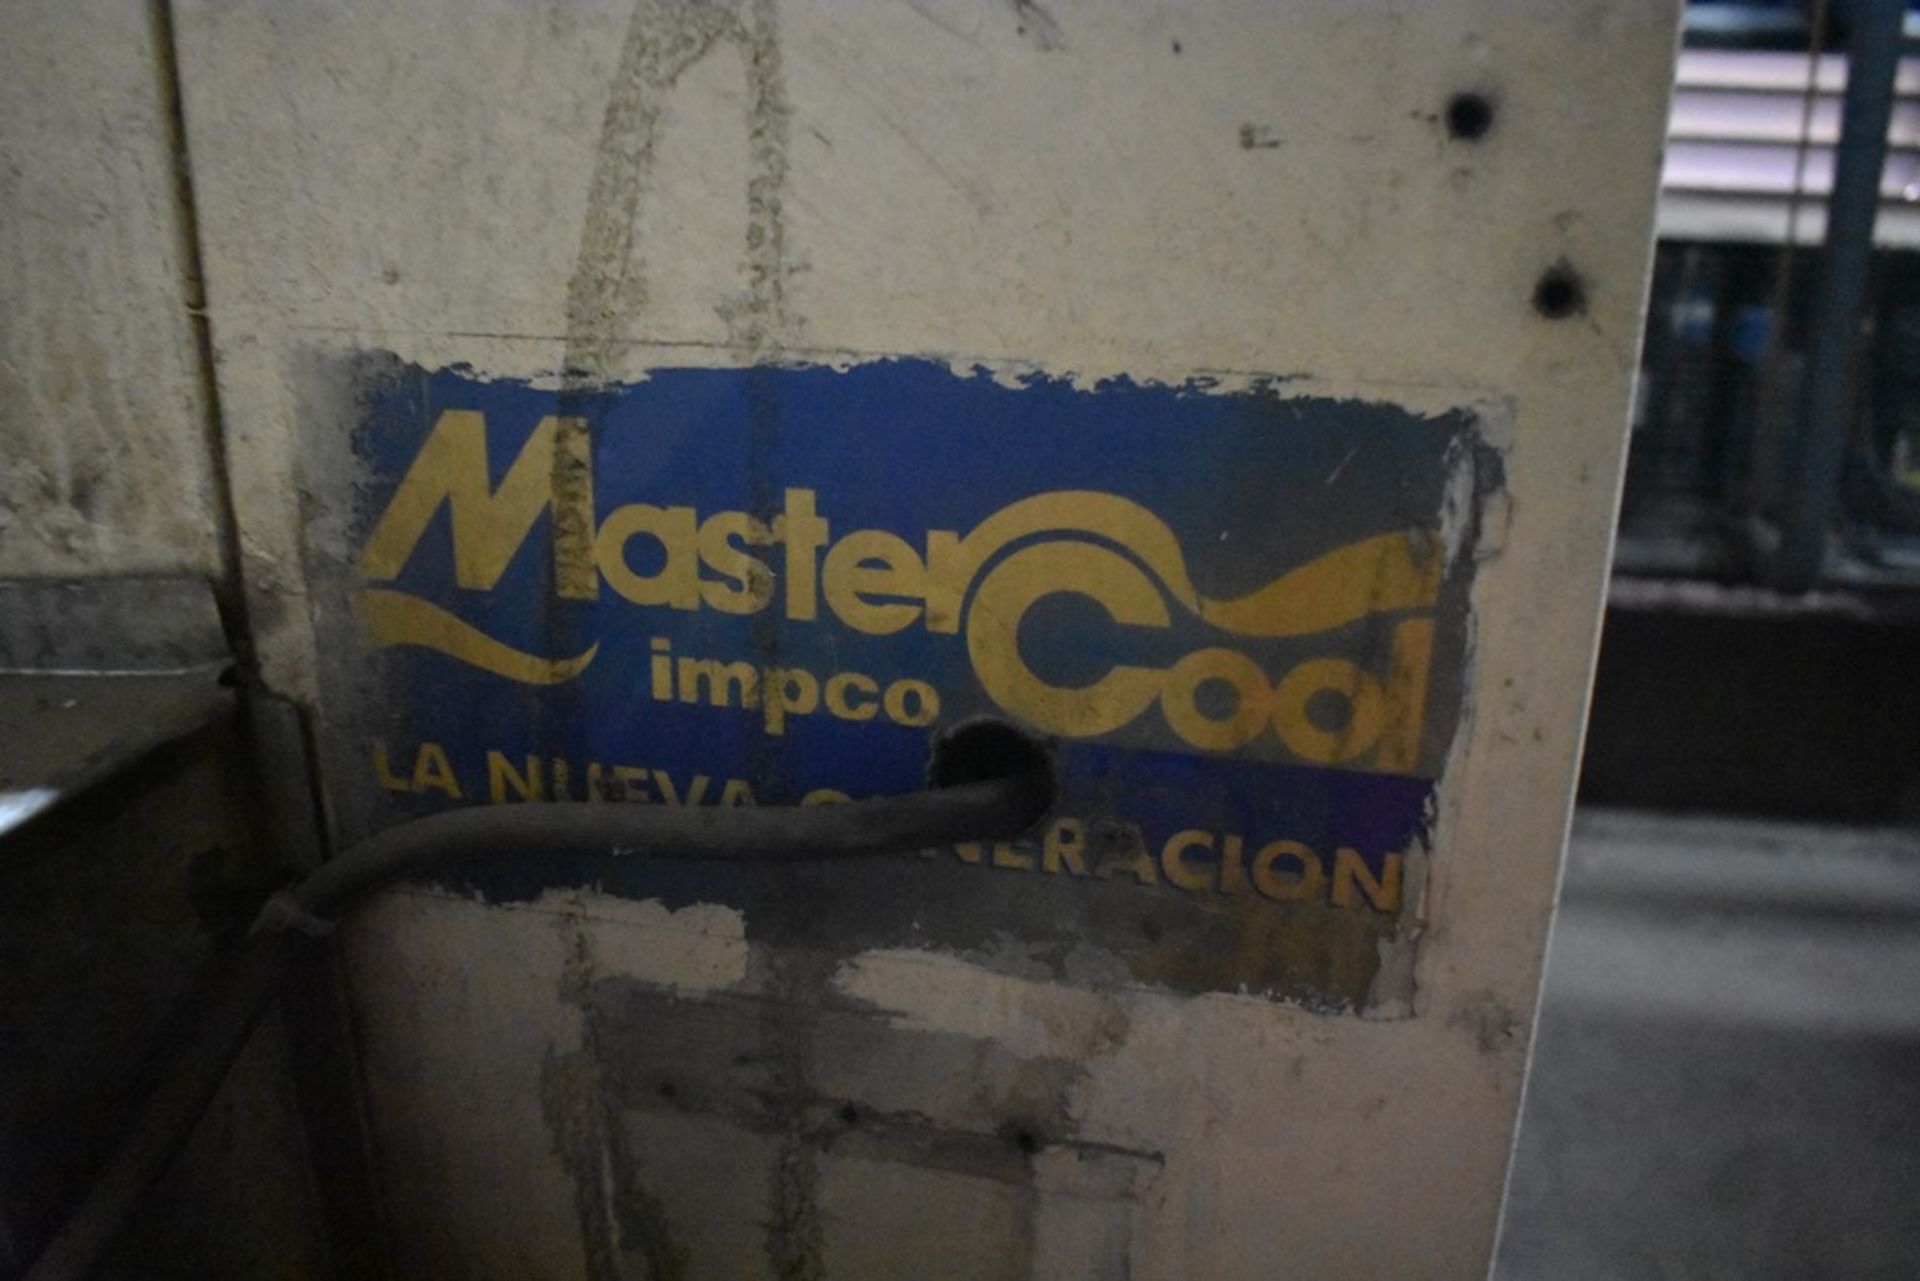 Equipo de extracción marca Master Cool, modelo ND, número de serie ND; incluye ducteria de 51 x 71 - Bild 7 aus 28